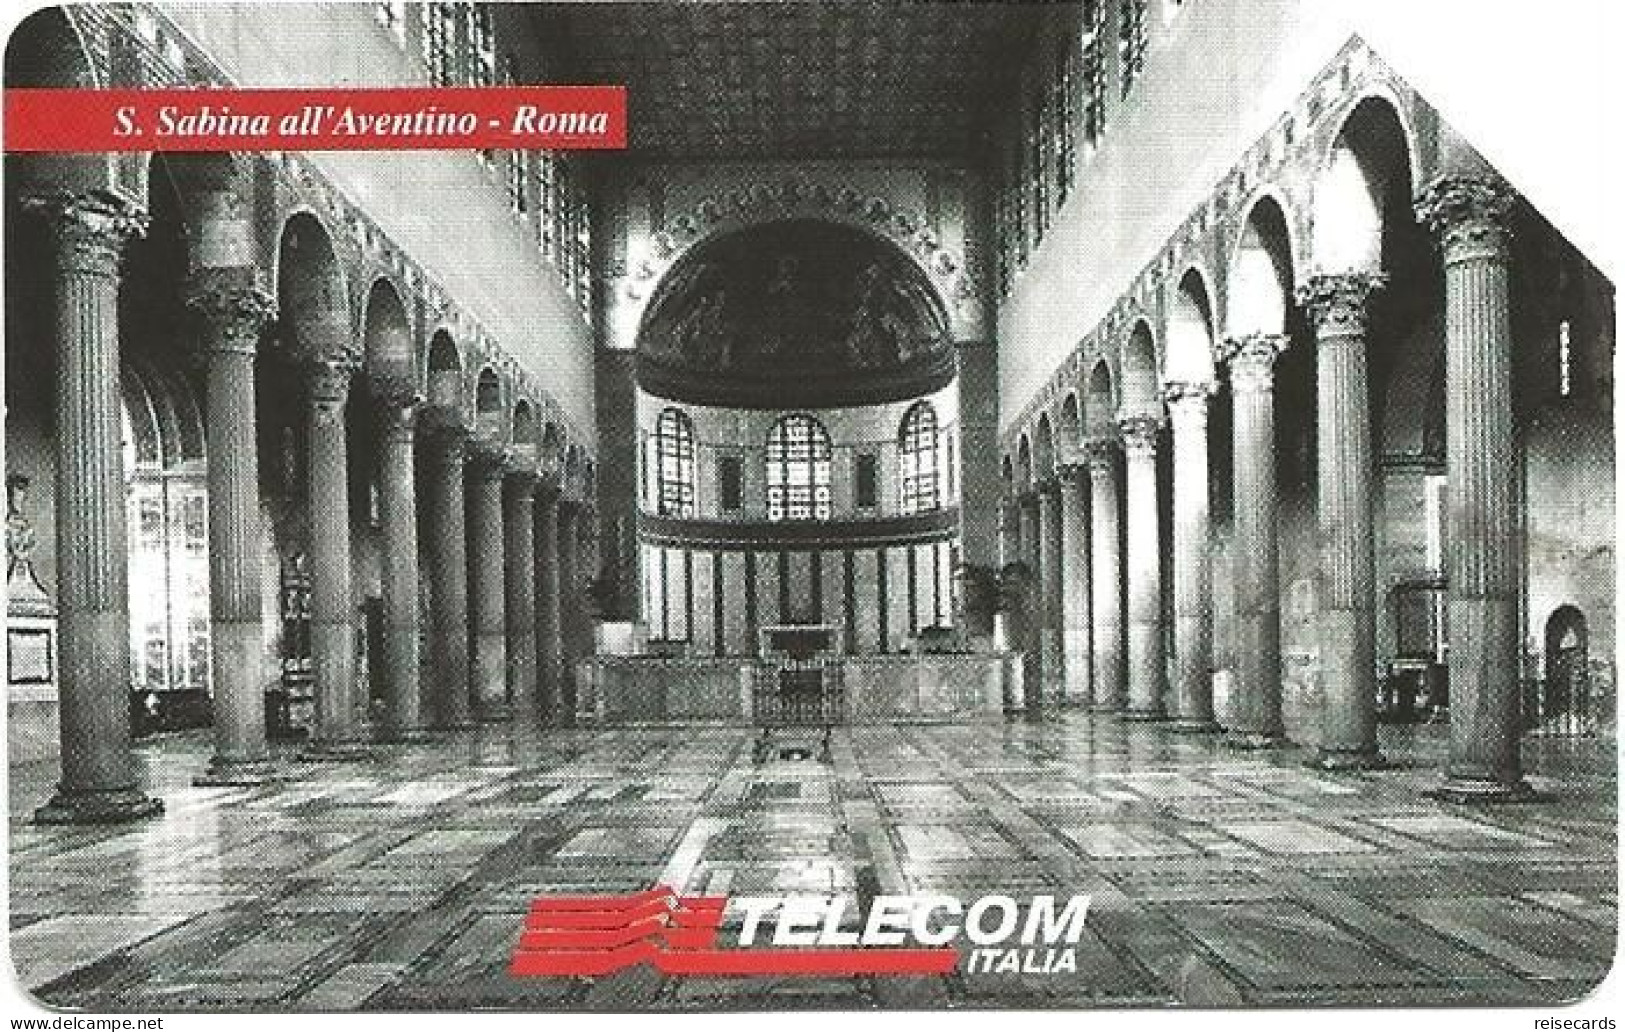 Italy: Telecom Italia - Il Culto Dell'Arte, S. Sabina All'Aventino Roma - Öff. Werbe-TK